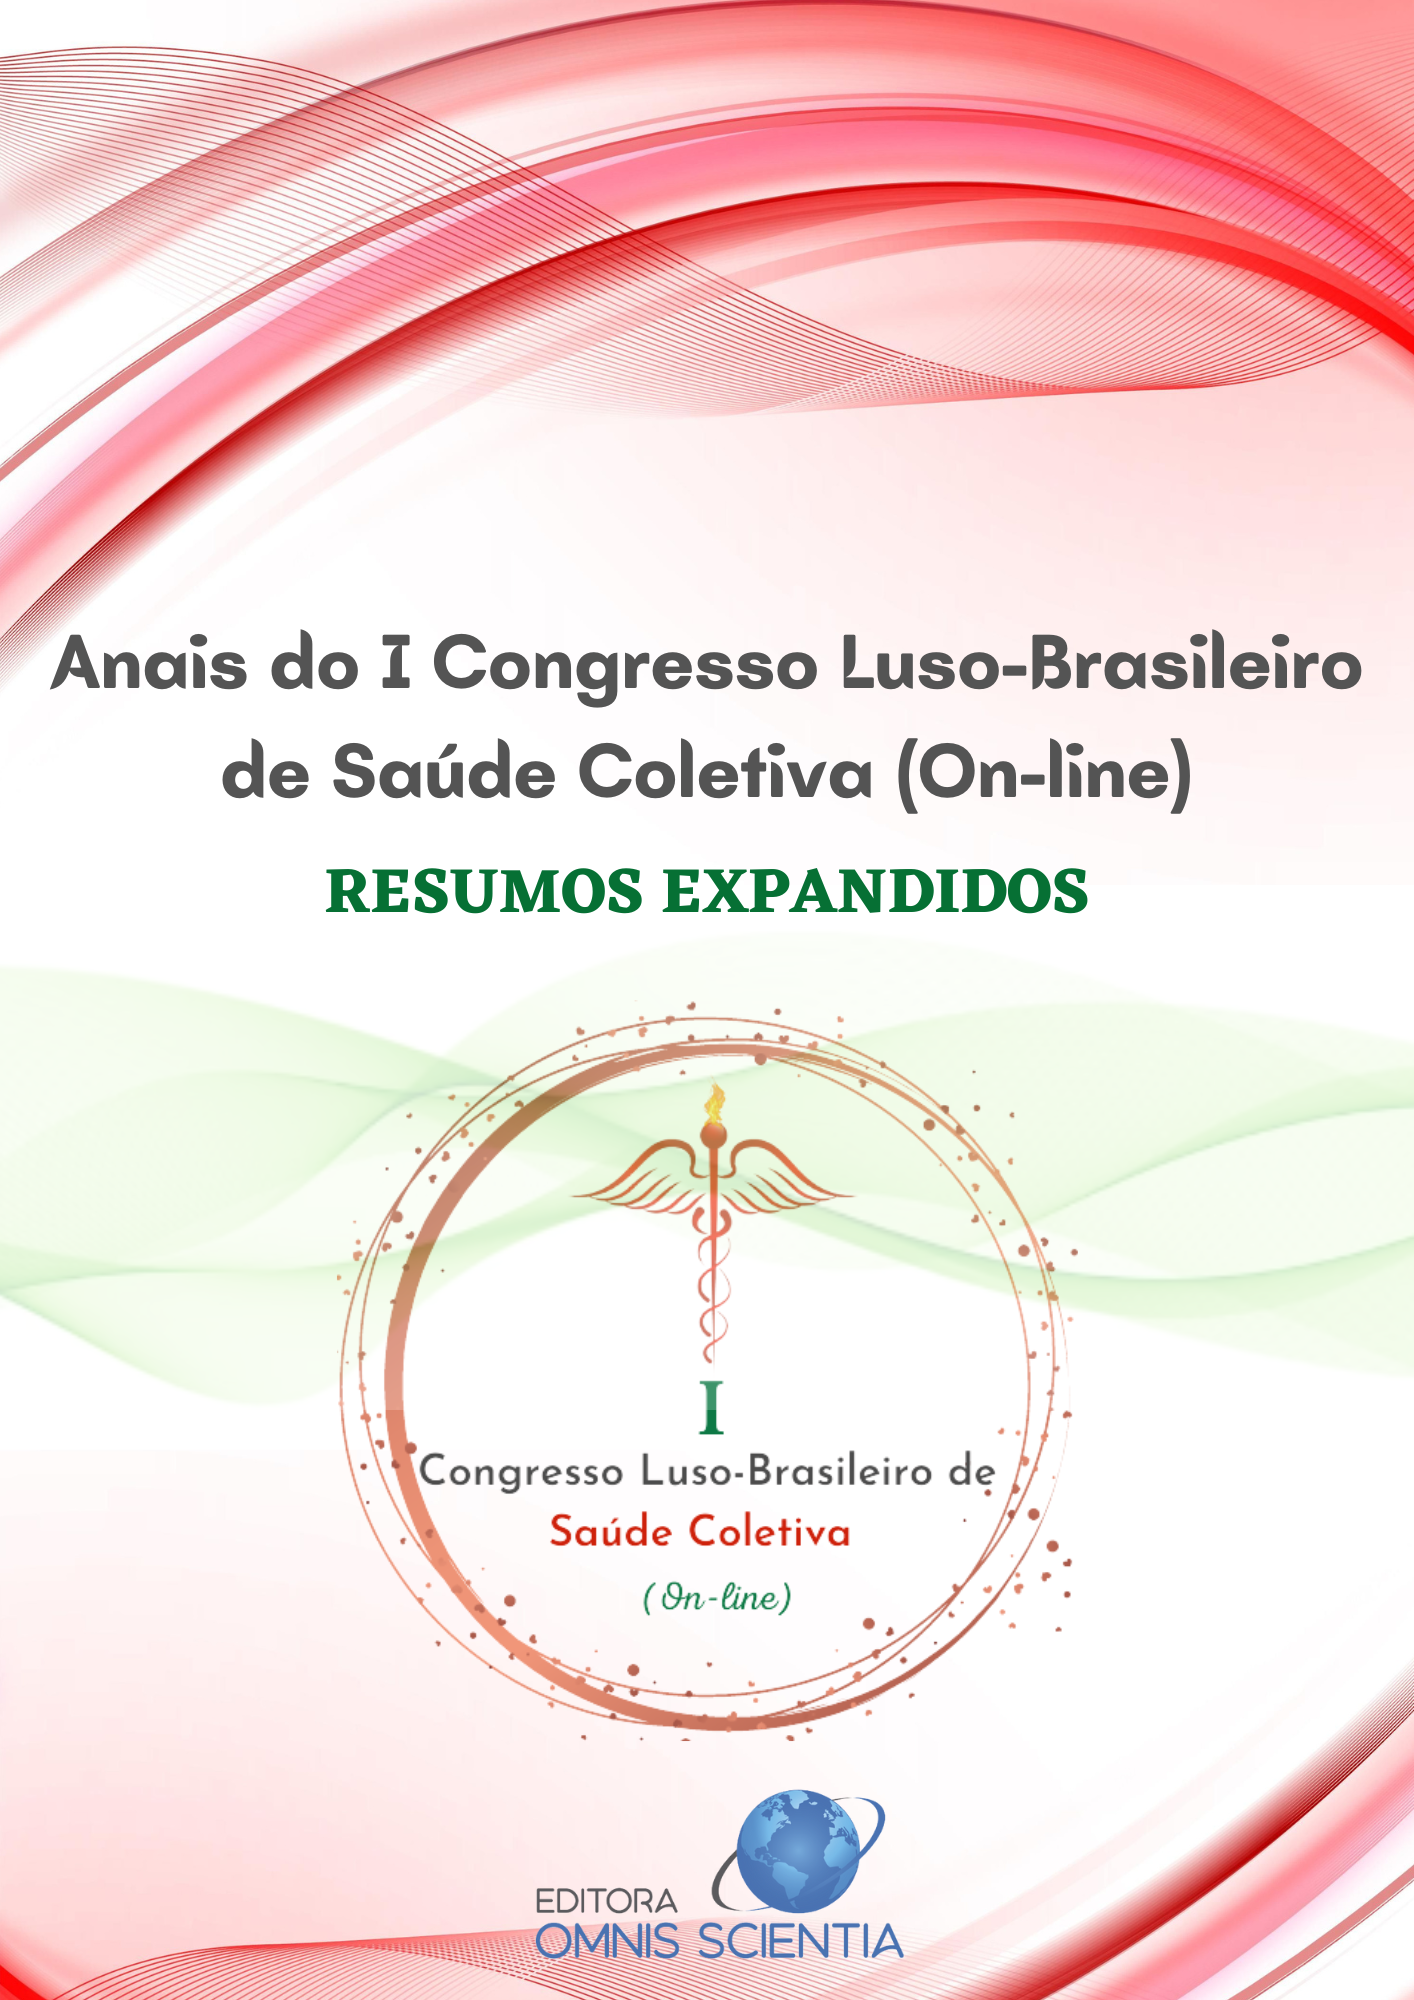 ANAIS DO I CONGRESSO LUSO-BRASILEIRO DE SAÚDE COLETIVA (ON-LINE) – RESUMOS EXPANDIDOS